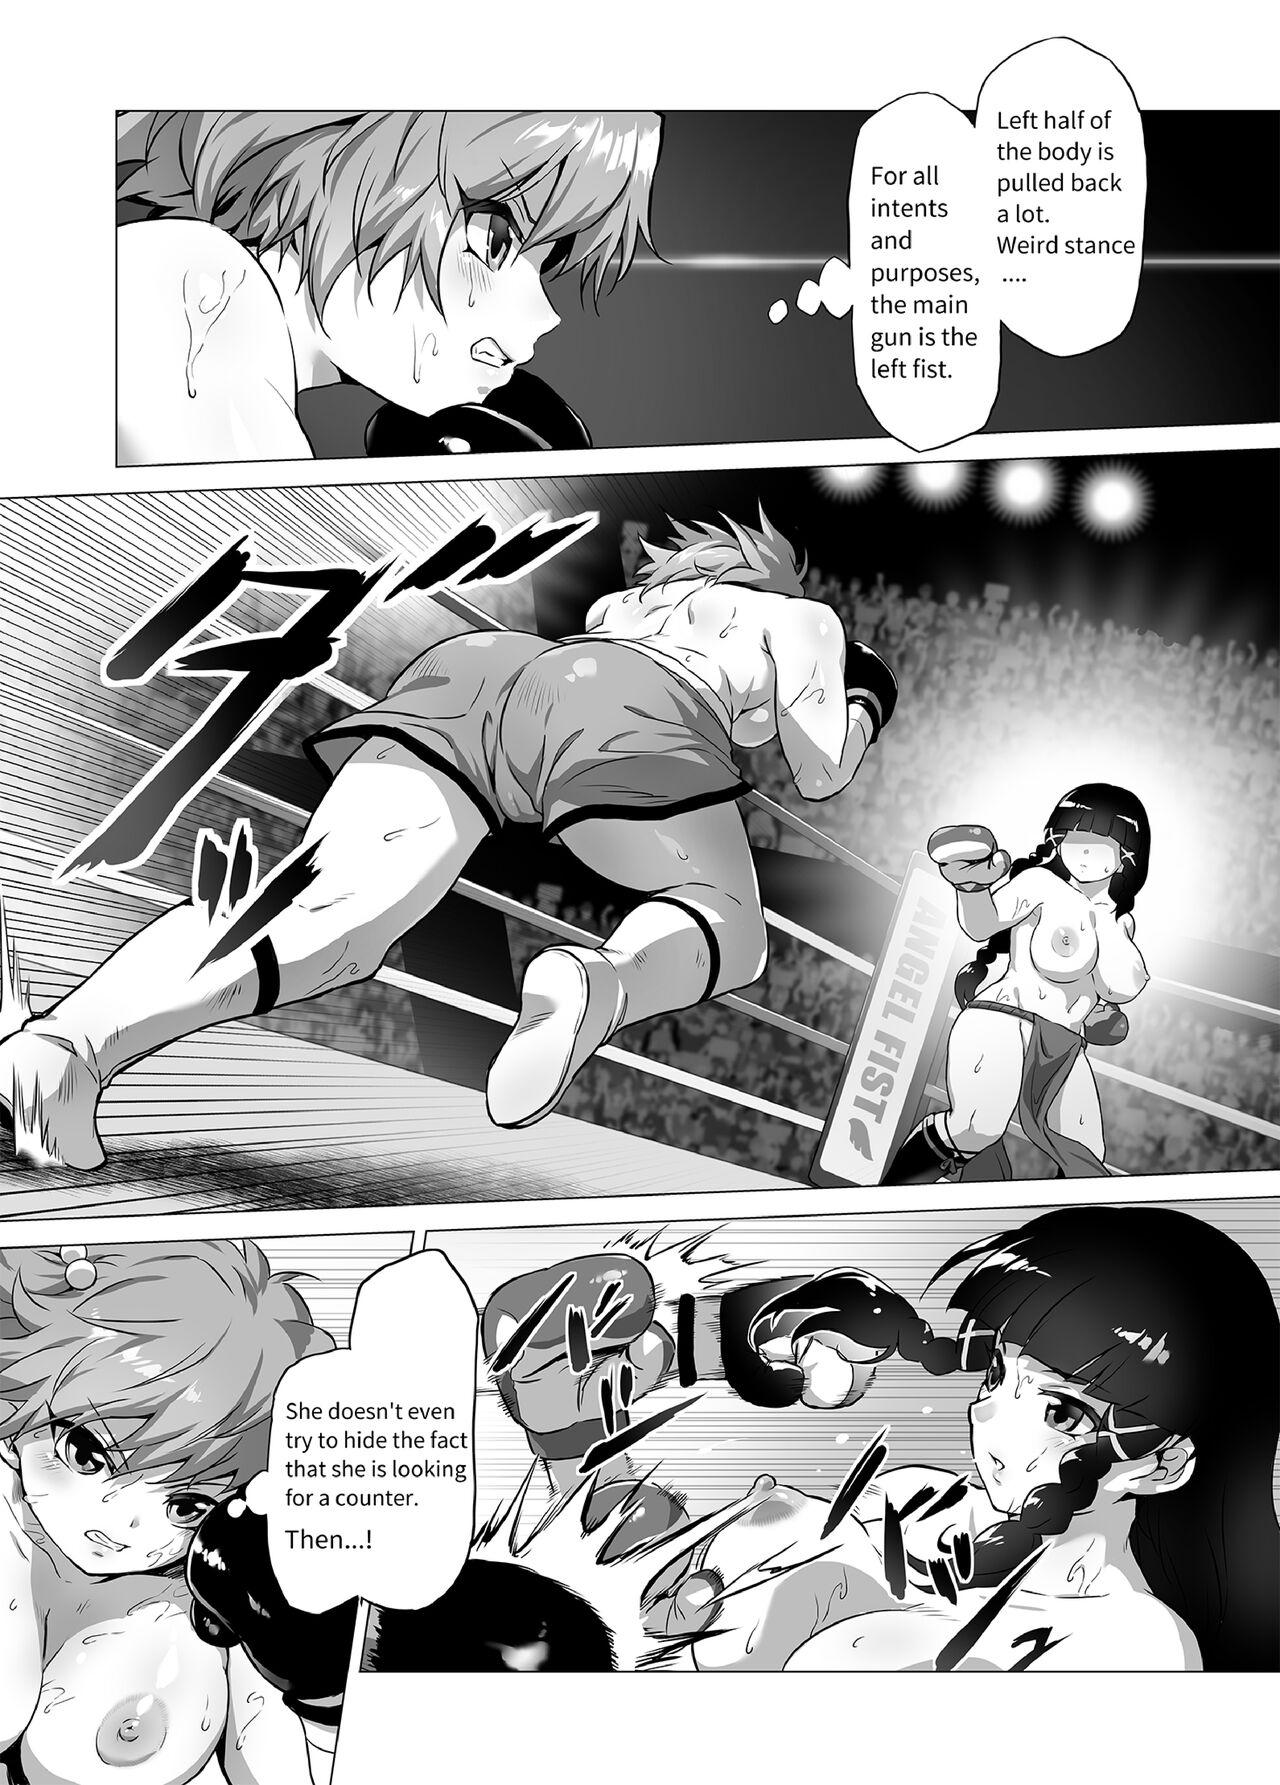 Grande Mahiro STANDUP! Manga Ver. Licking Pussy - Page 7